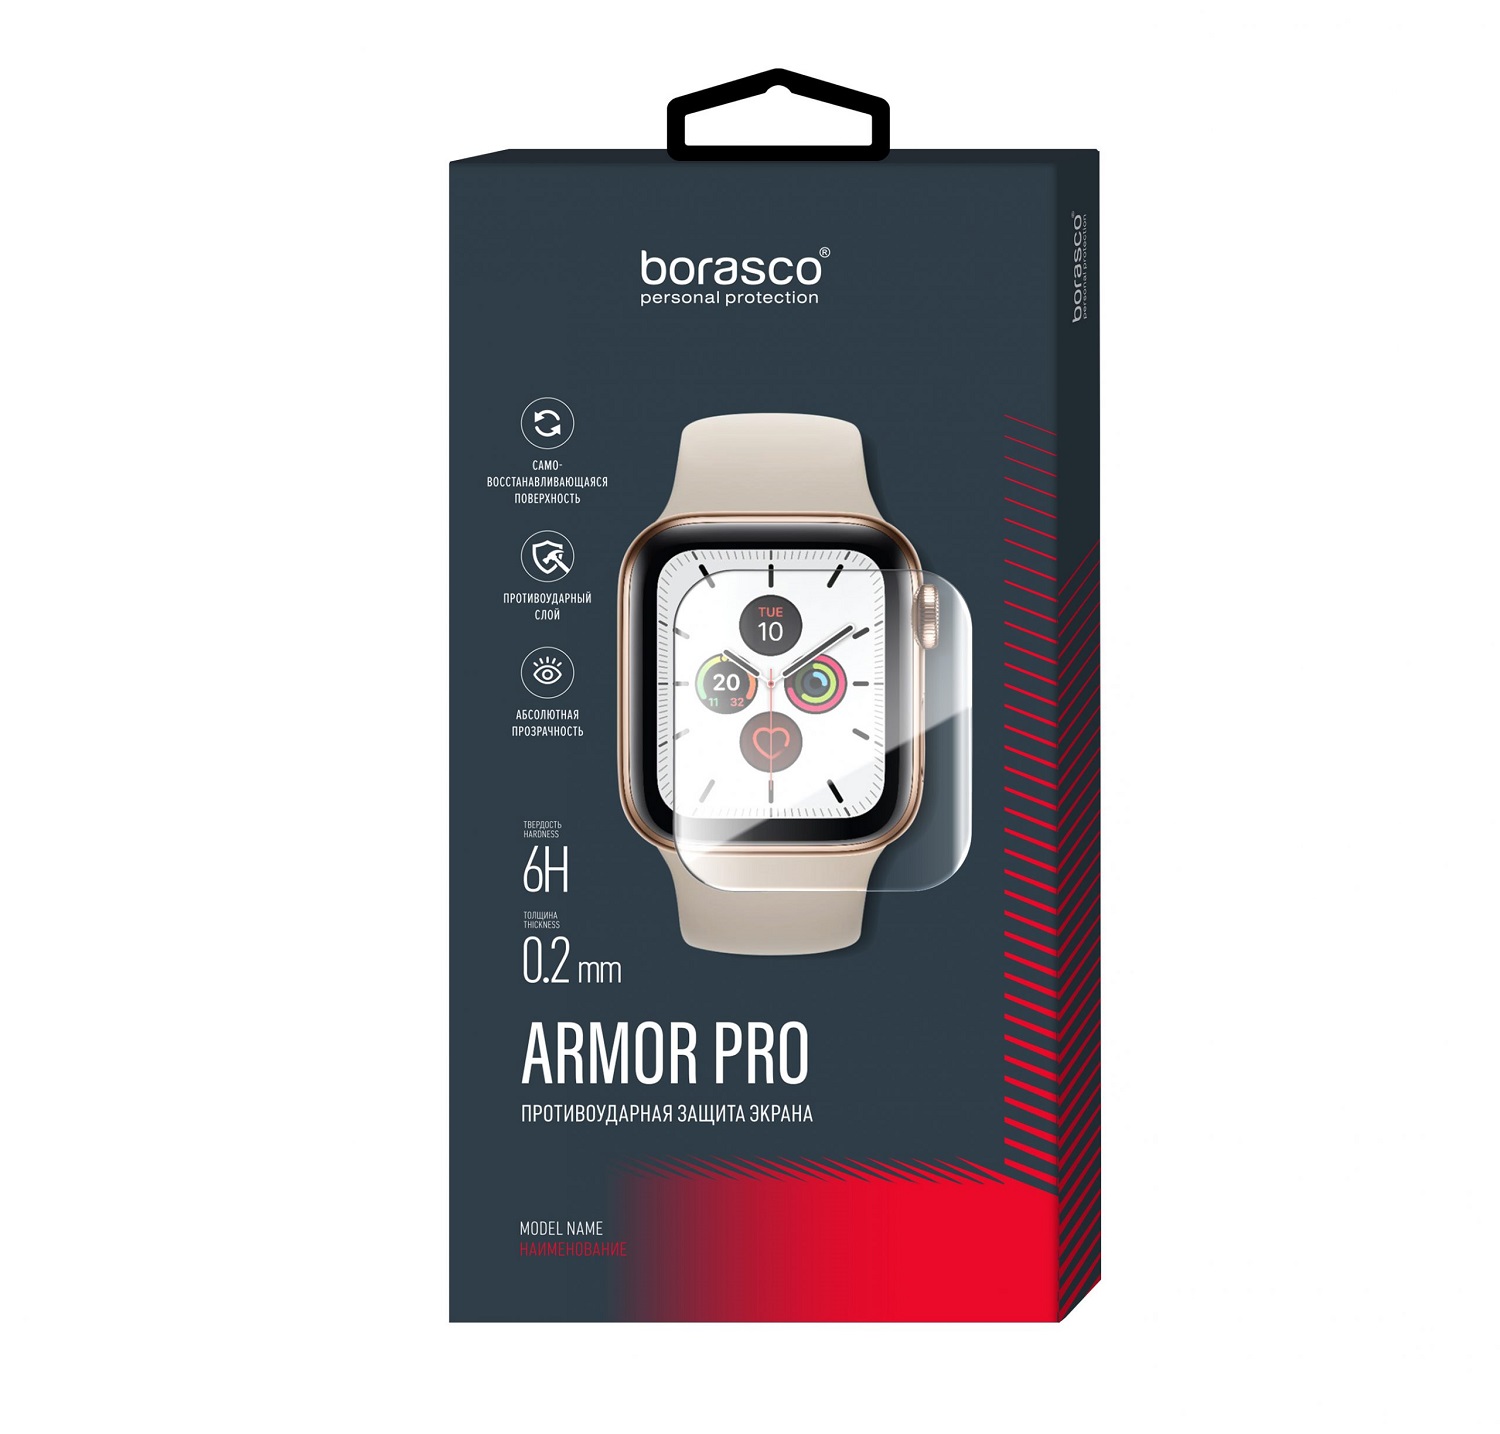 Защита экрана BoraSCO Armor Pro для Huawei Watch GT 2 защита экрана borasco armor pro для huawei watch fit